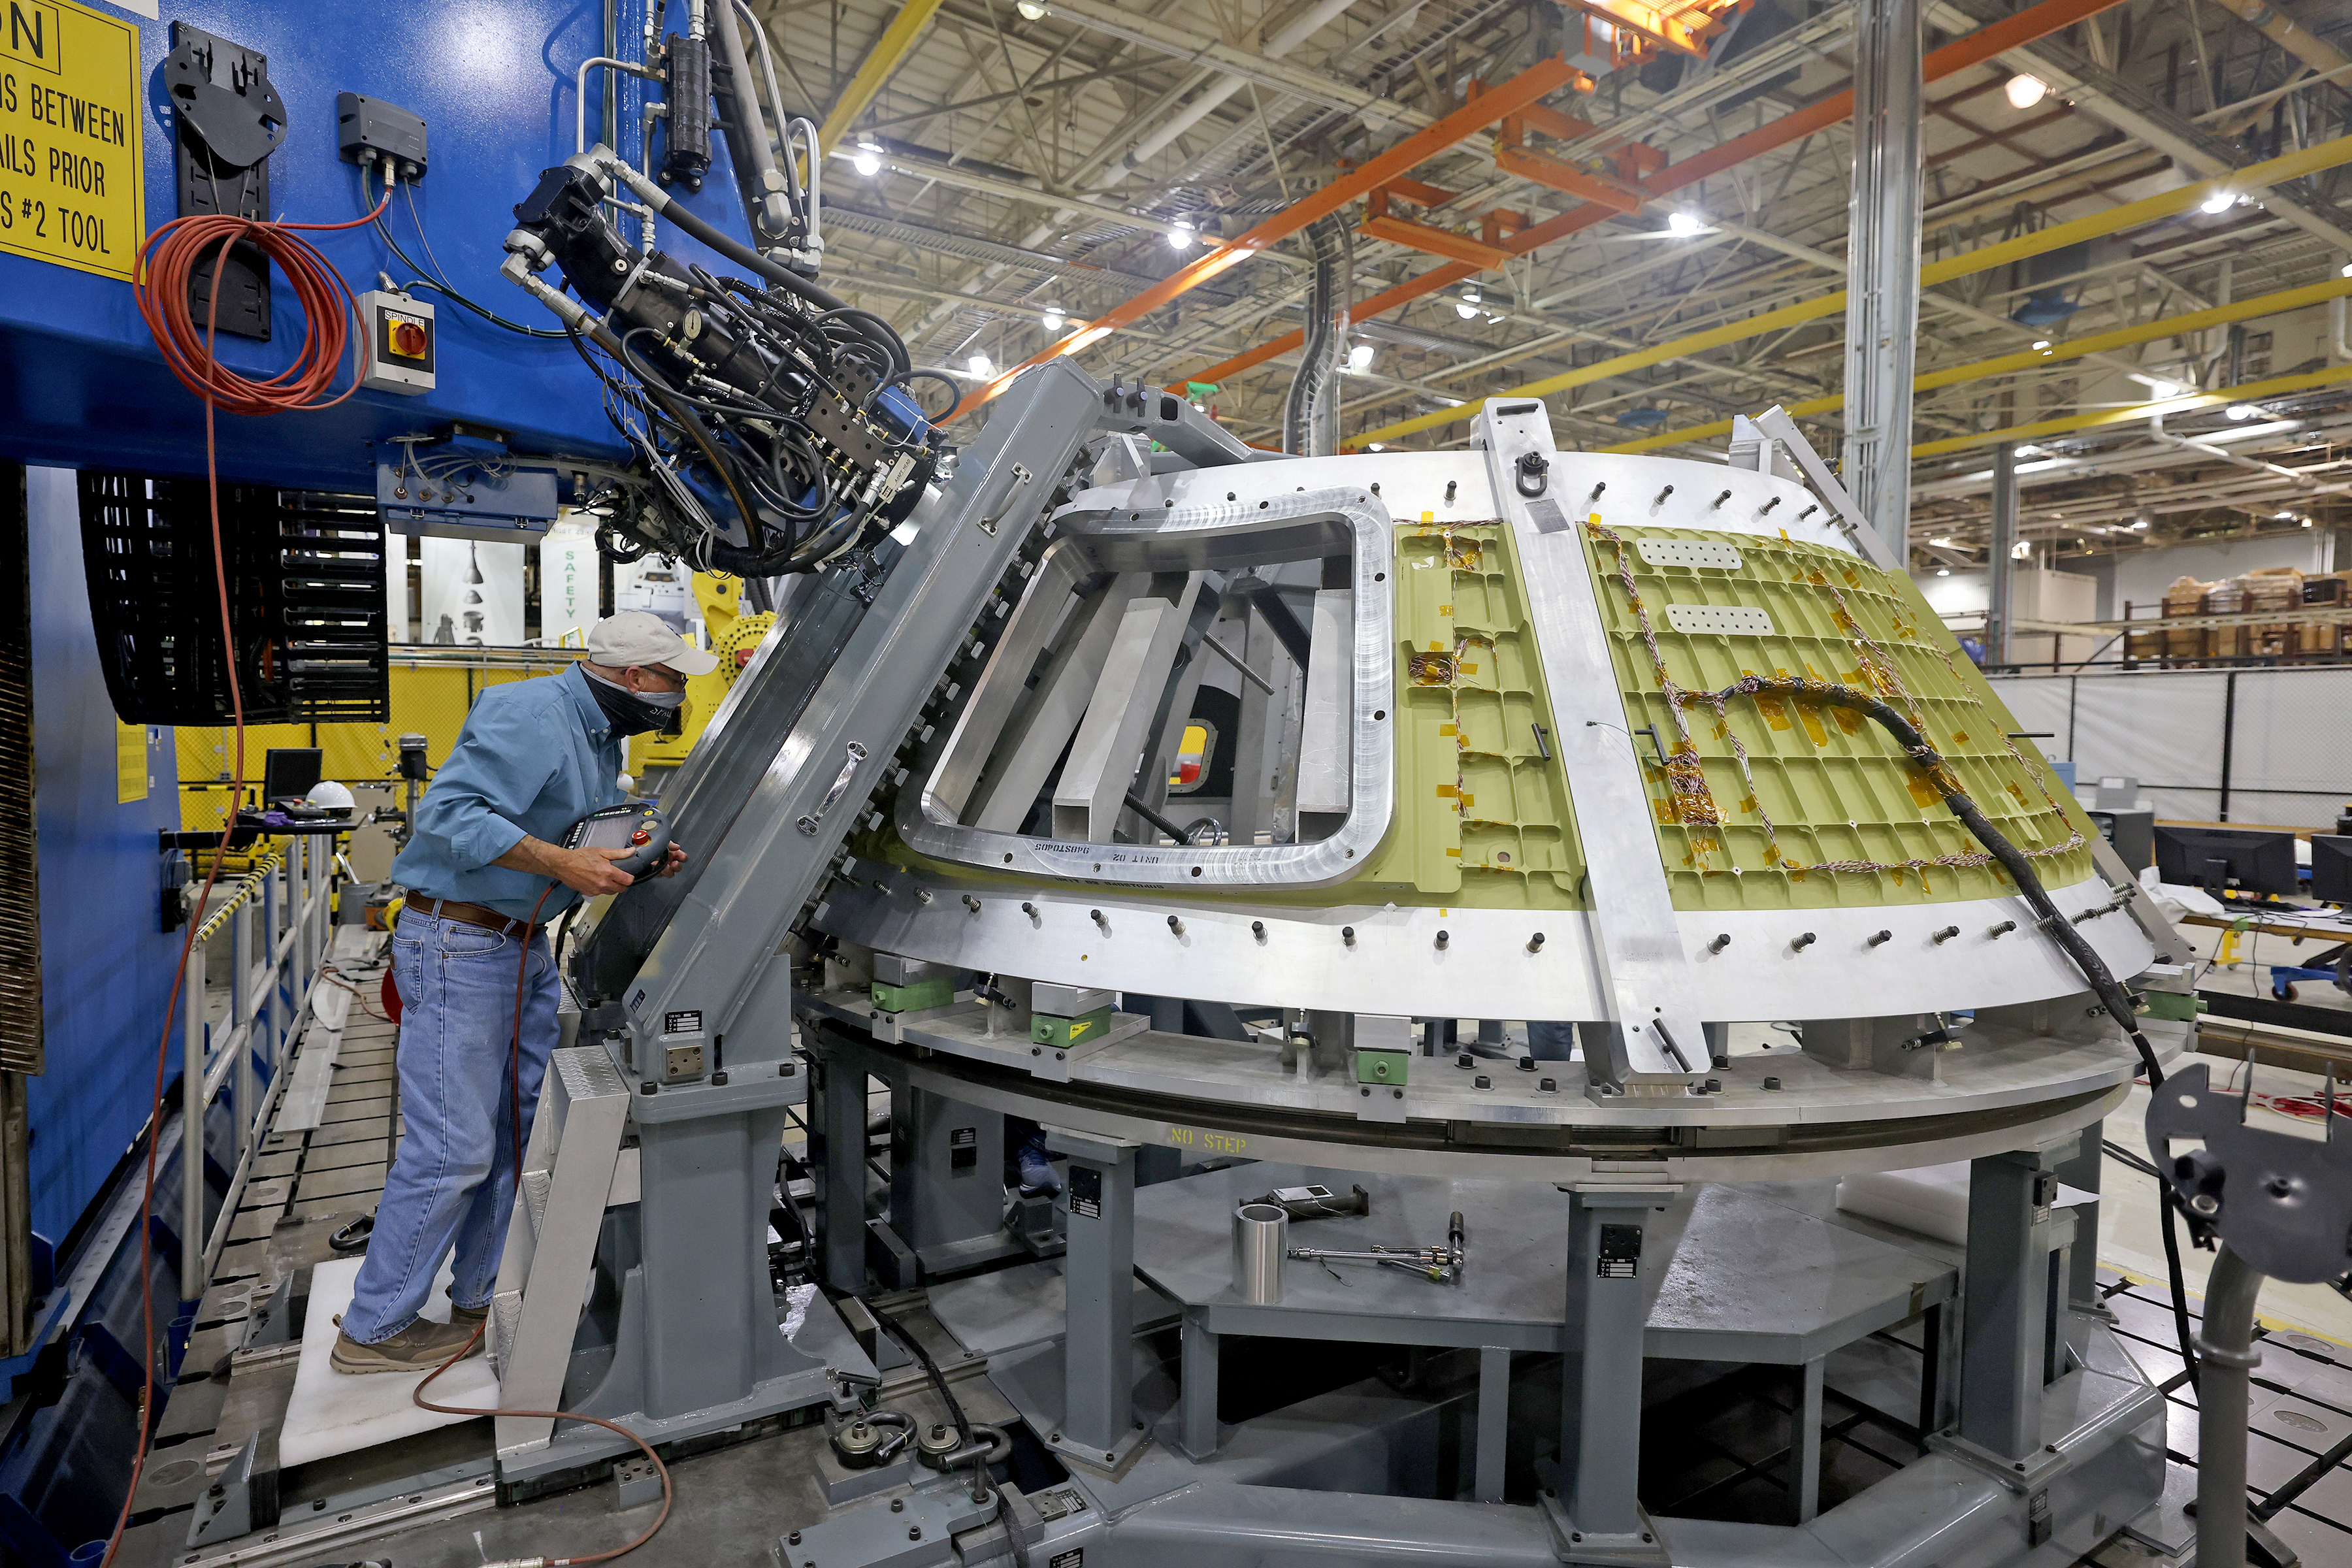 A technician views the Artemis III Orion spacecraft structure during welding activities